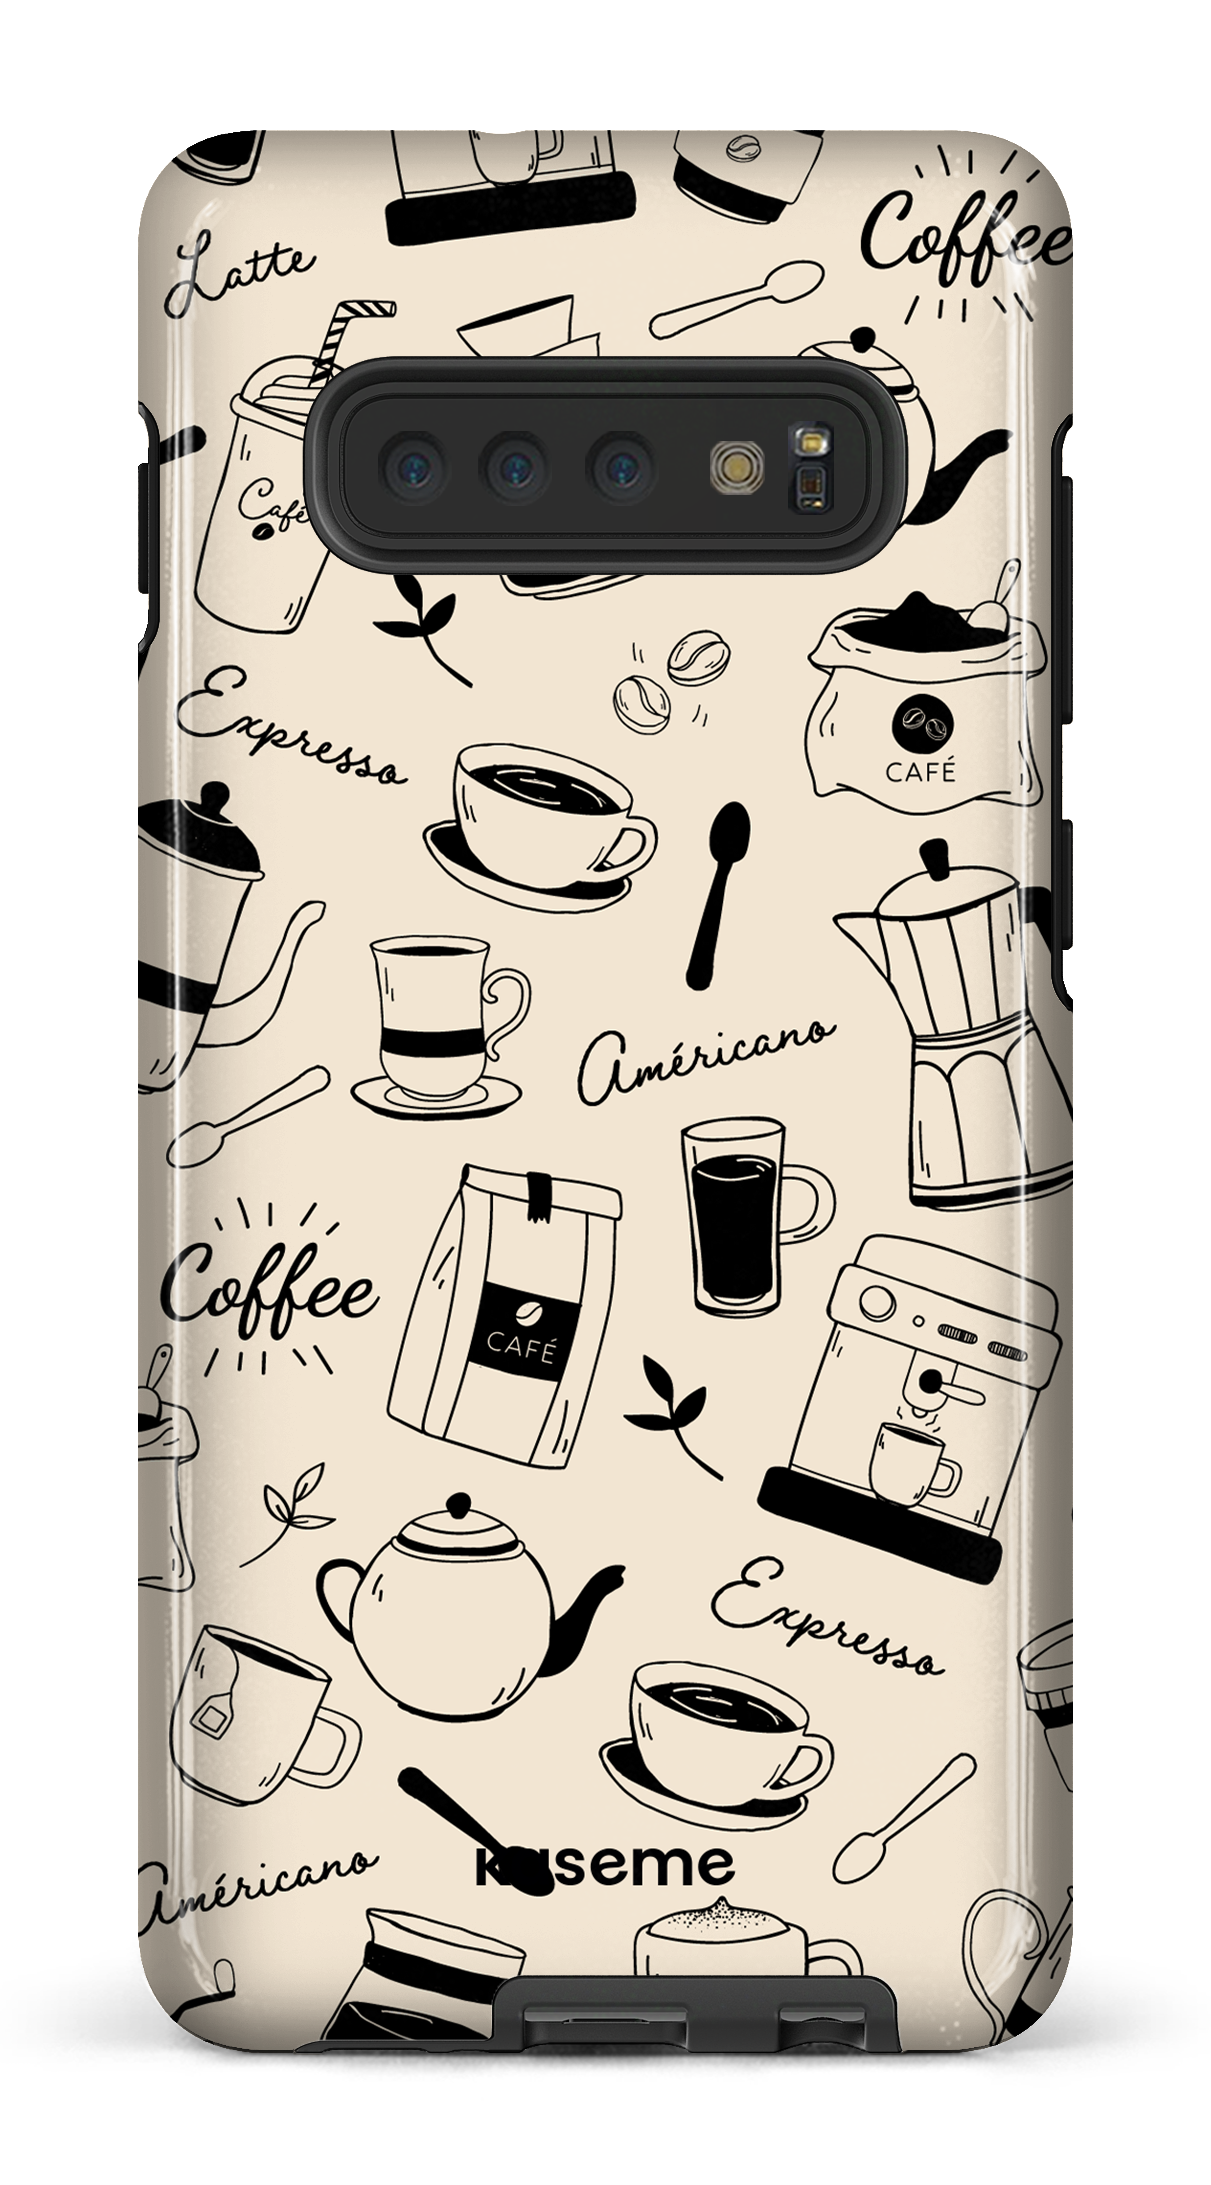 Espresso - Galaxy S10 Plus